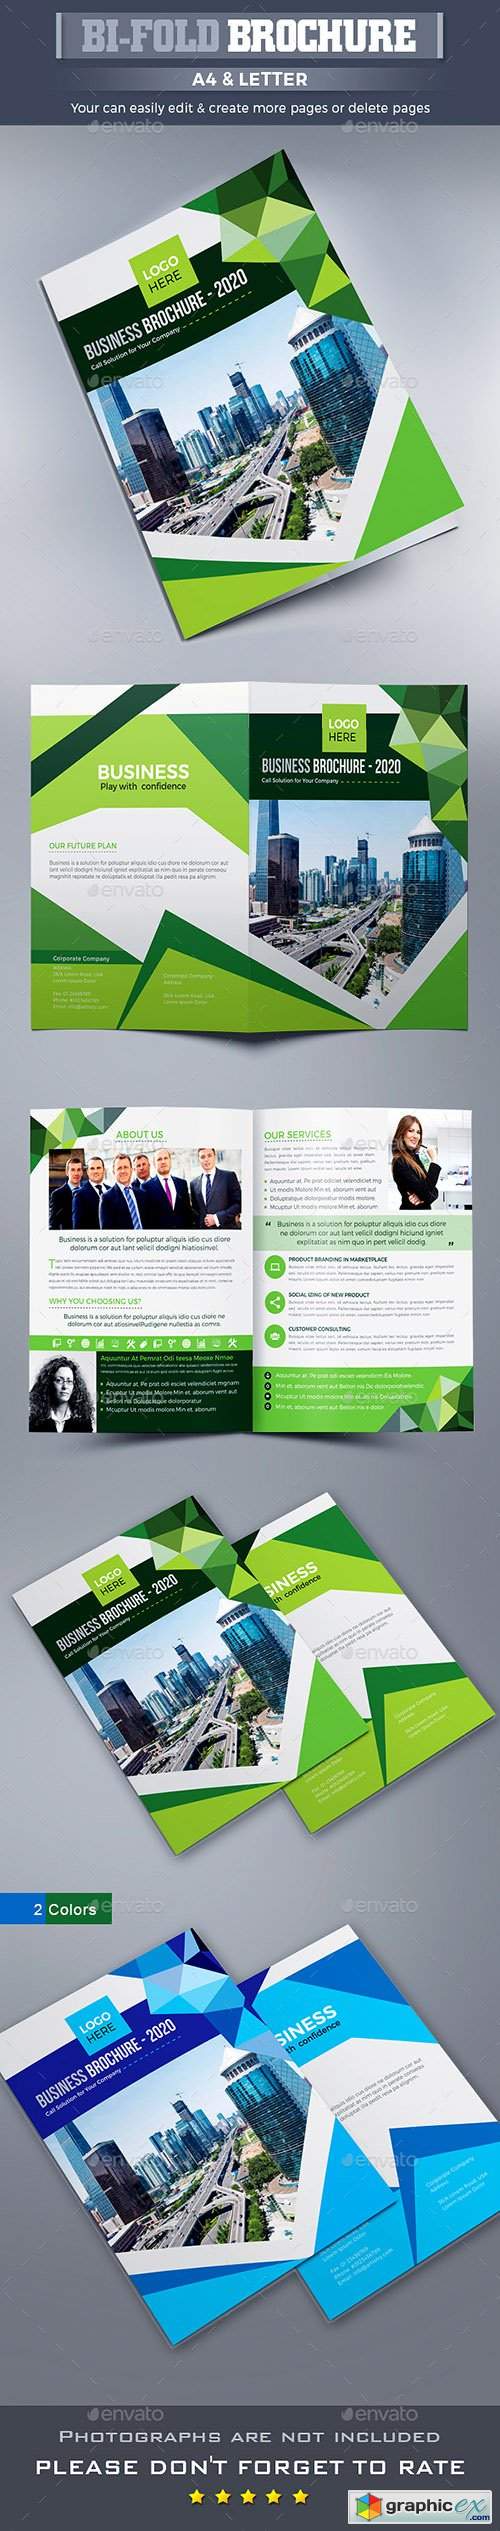 Corporate Bi-fold Brochure 22550011